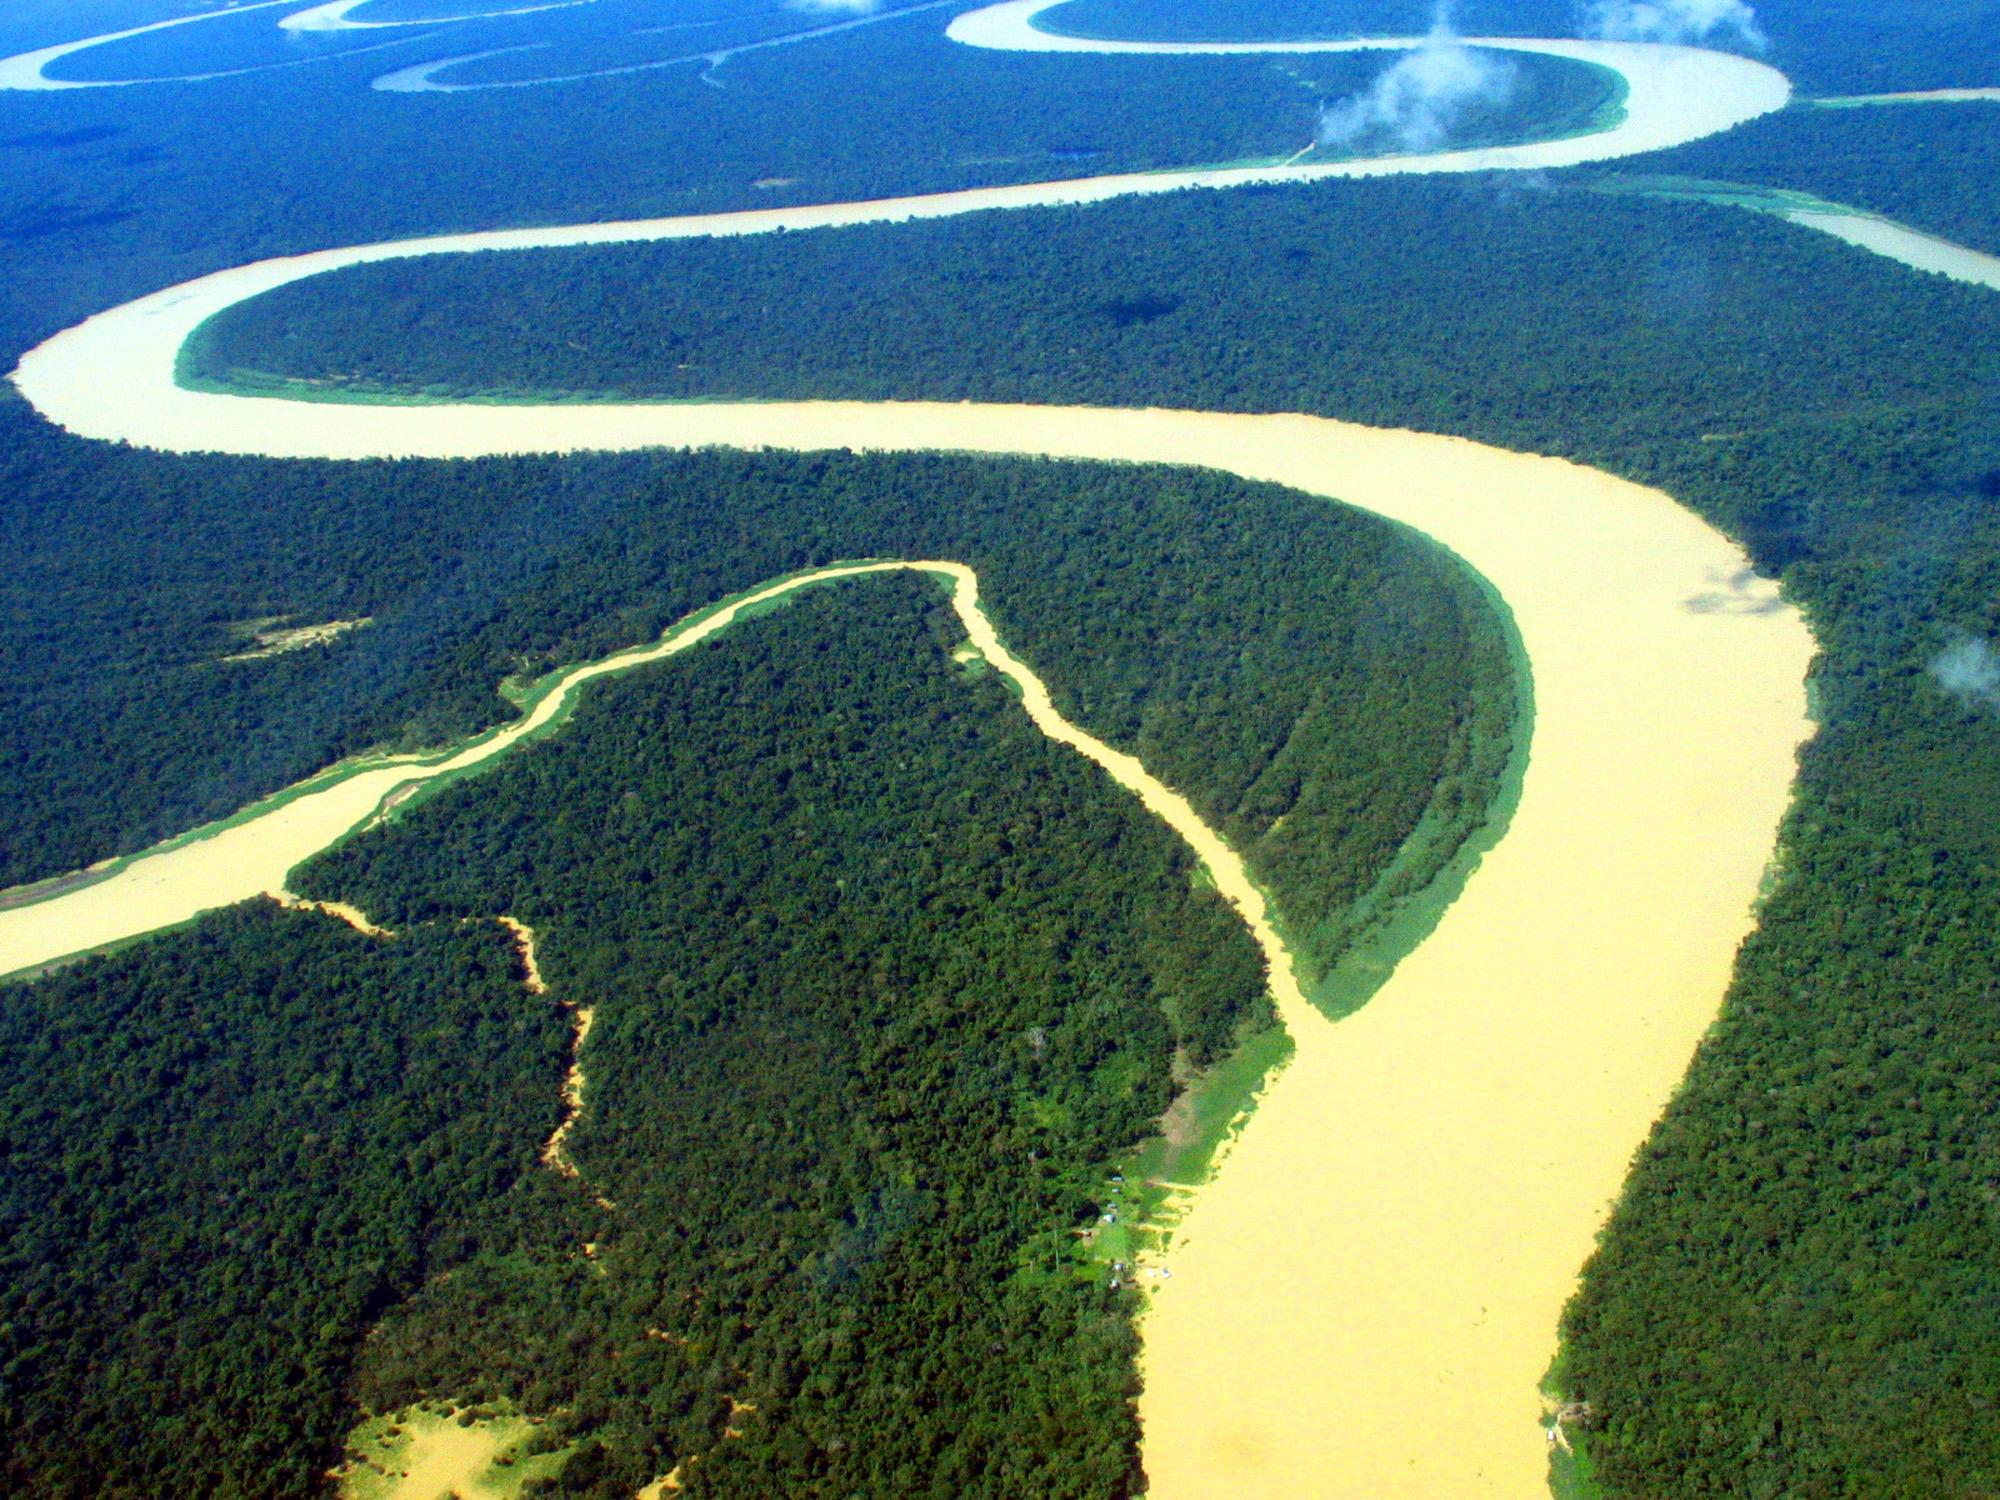 Реки на планете земля. Амазонка и Ориноко. Река Ориноко Южная Америка. Бразилия Амазонская низменность. Ориноко Венесуэла.